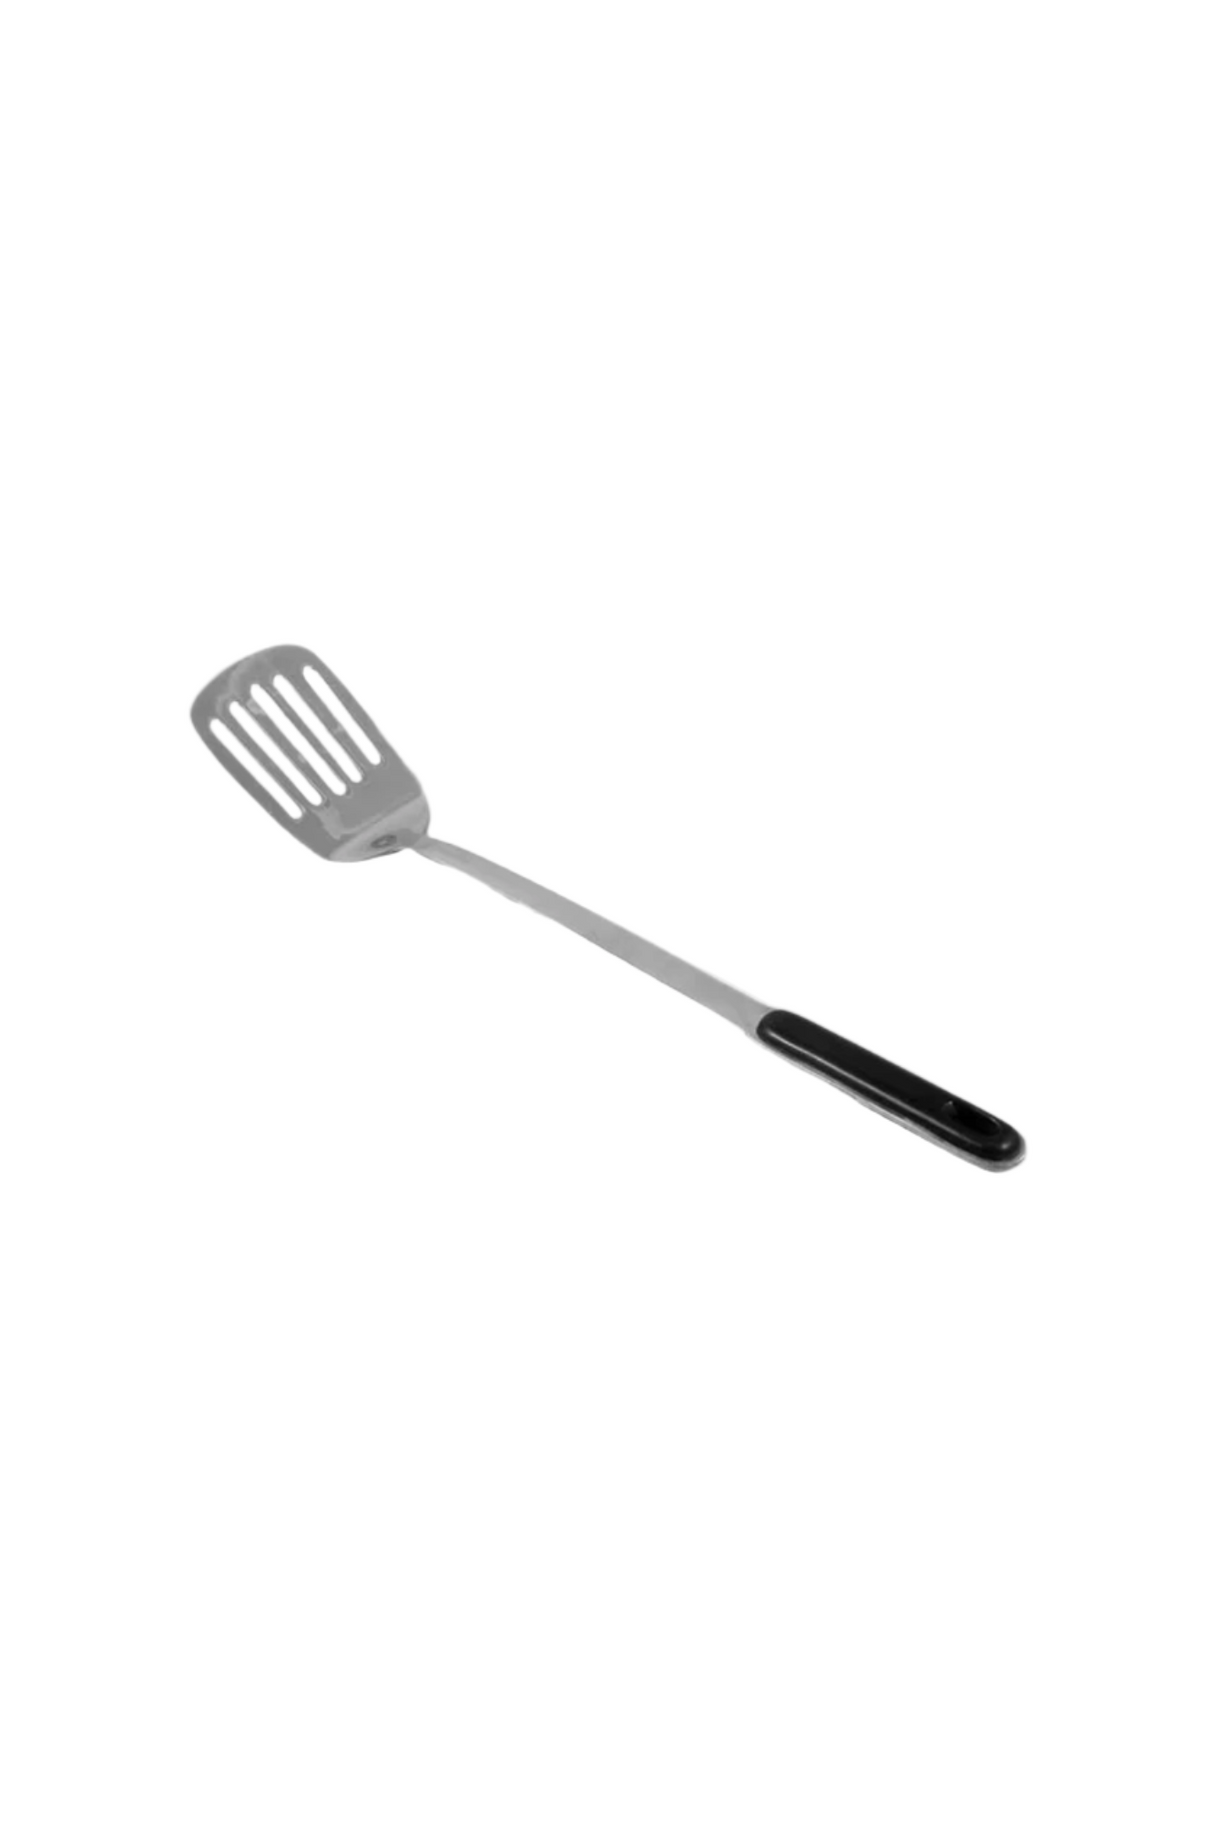 spatula black handle 12"